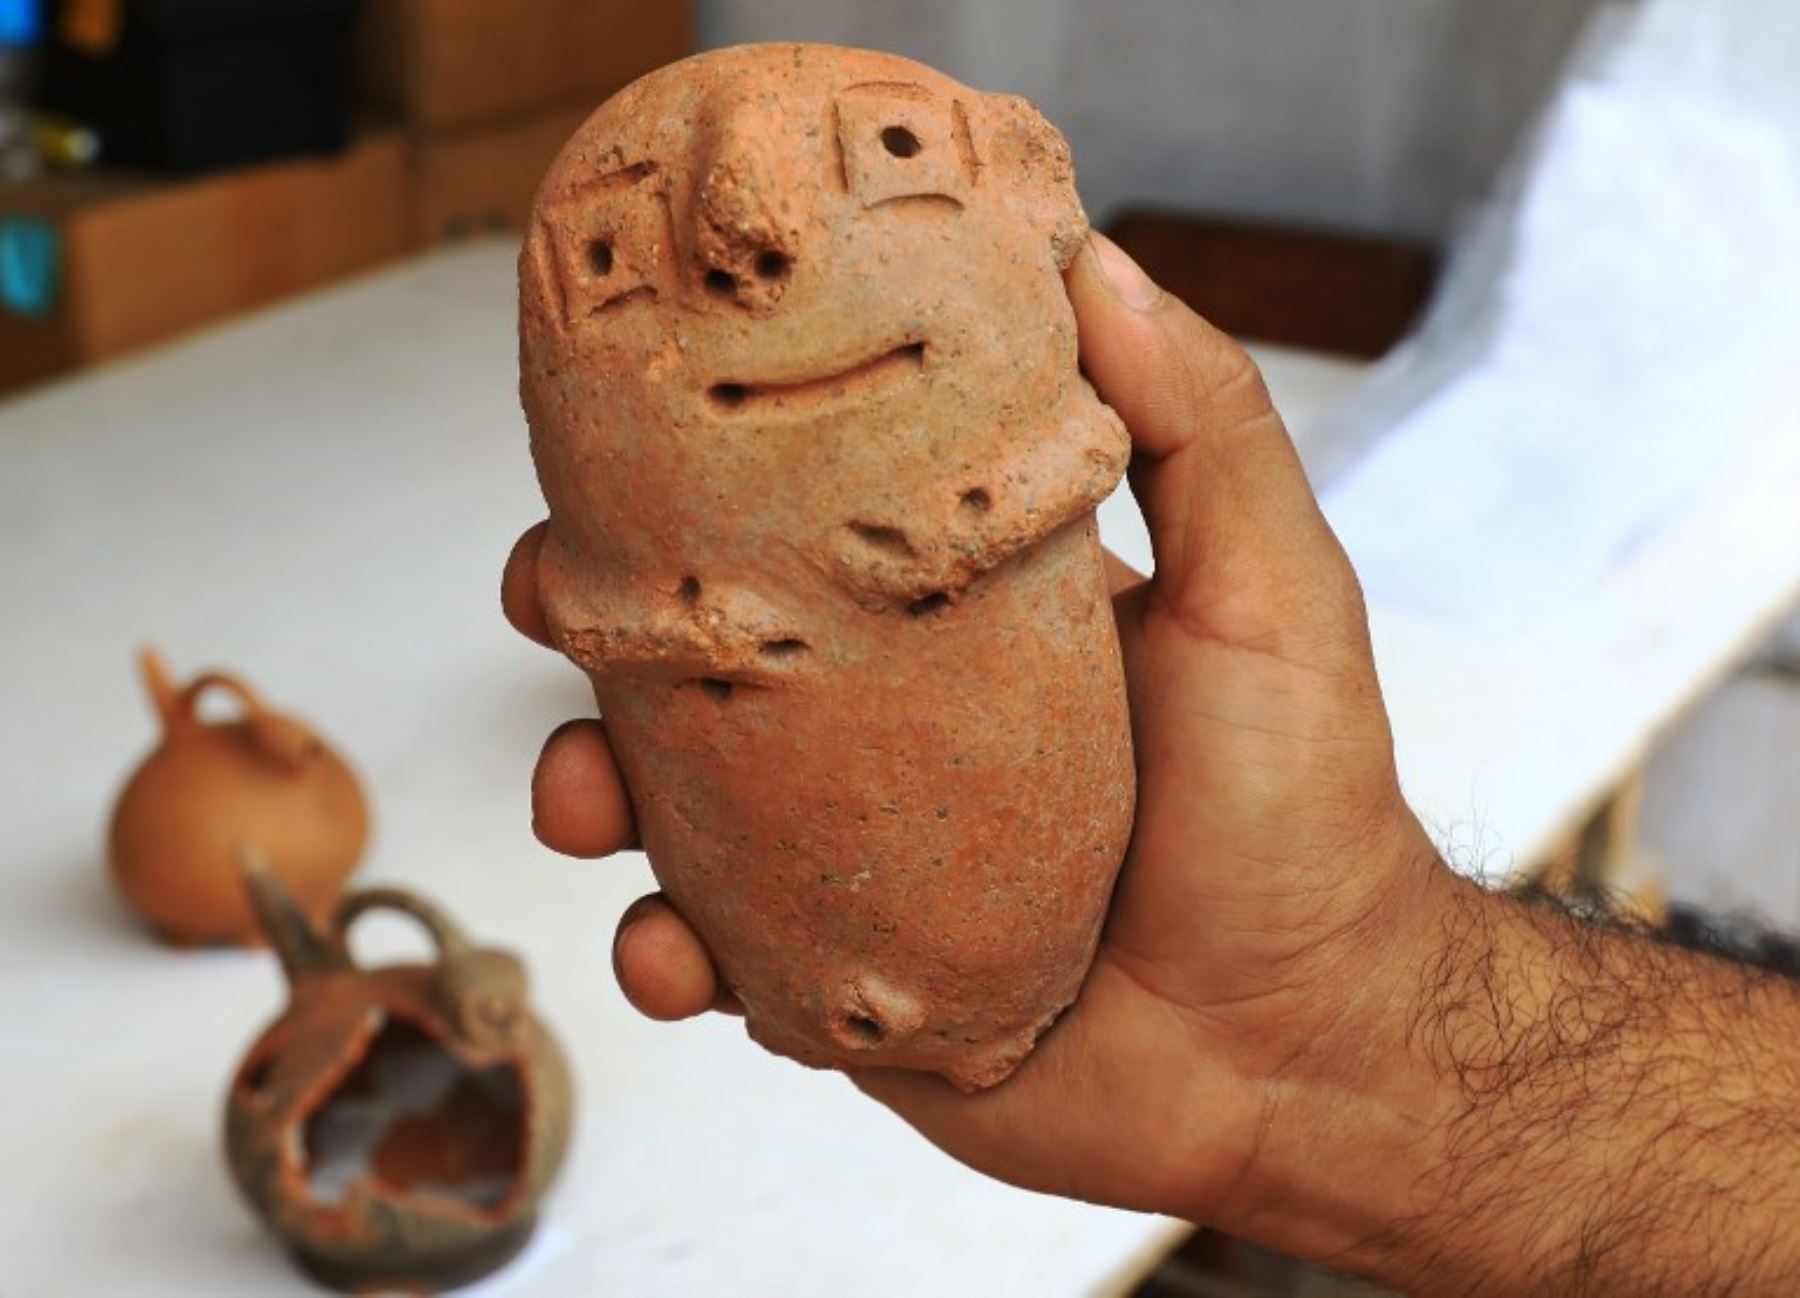 Un arqueólogo muestra un objeto de cerámica que data de más de 1,500 años, encontrado en un sitio de excavación en el pueblo costero norteño de Huanchaco, Perú.Foto:AFP